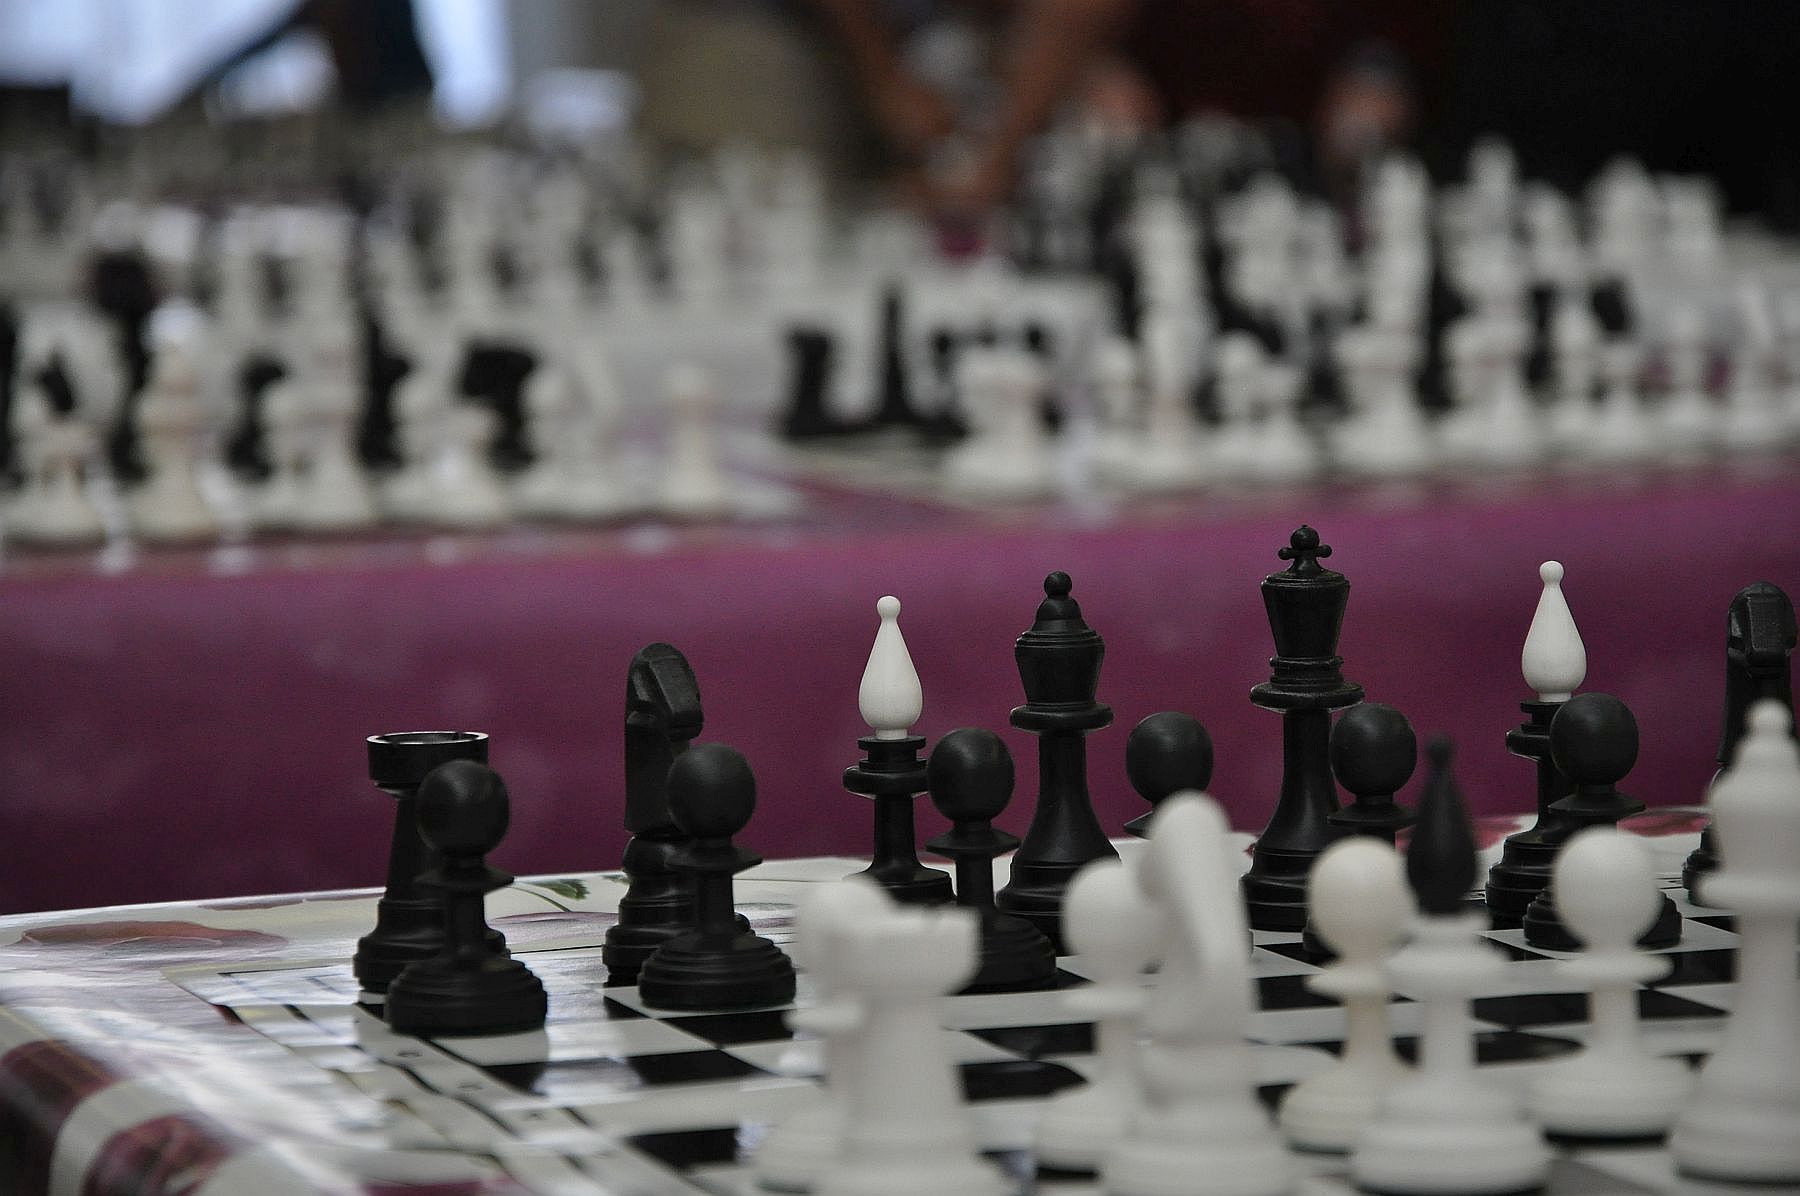 Fehérvári siker a Sakk Nemzeti Csapatbajnokság zárófordulójában